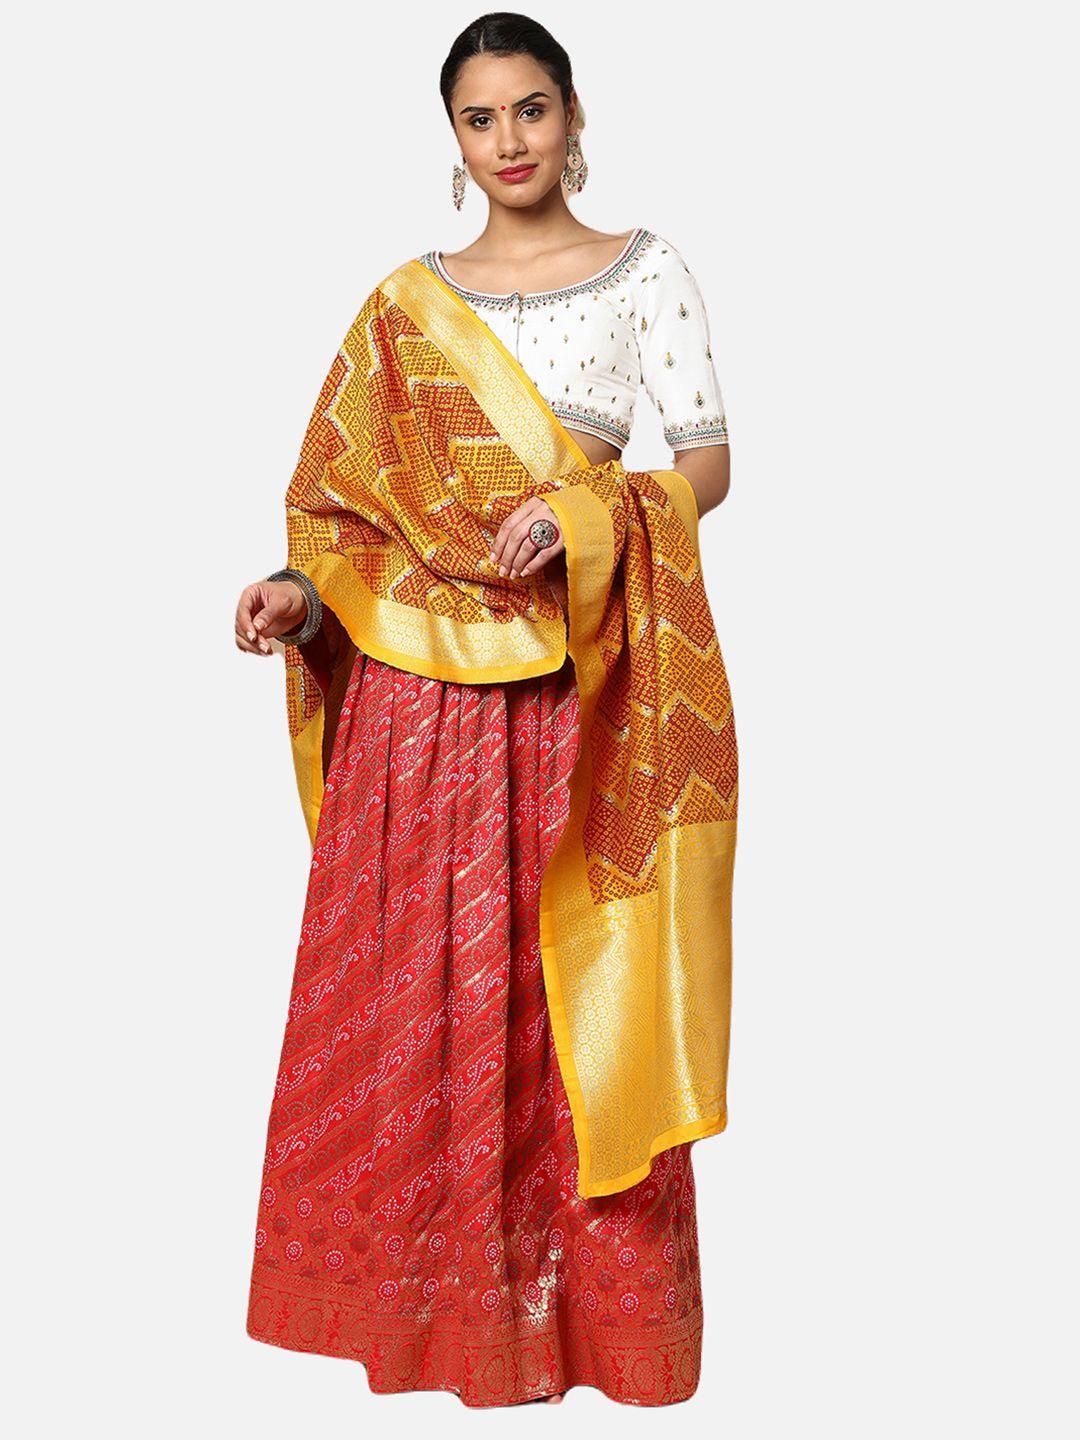 salwar studio red & yellow bandhani printed ready to wear lehenga & blouse with dupatta